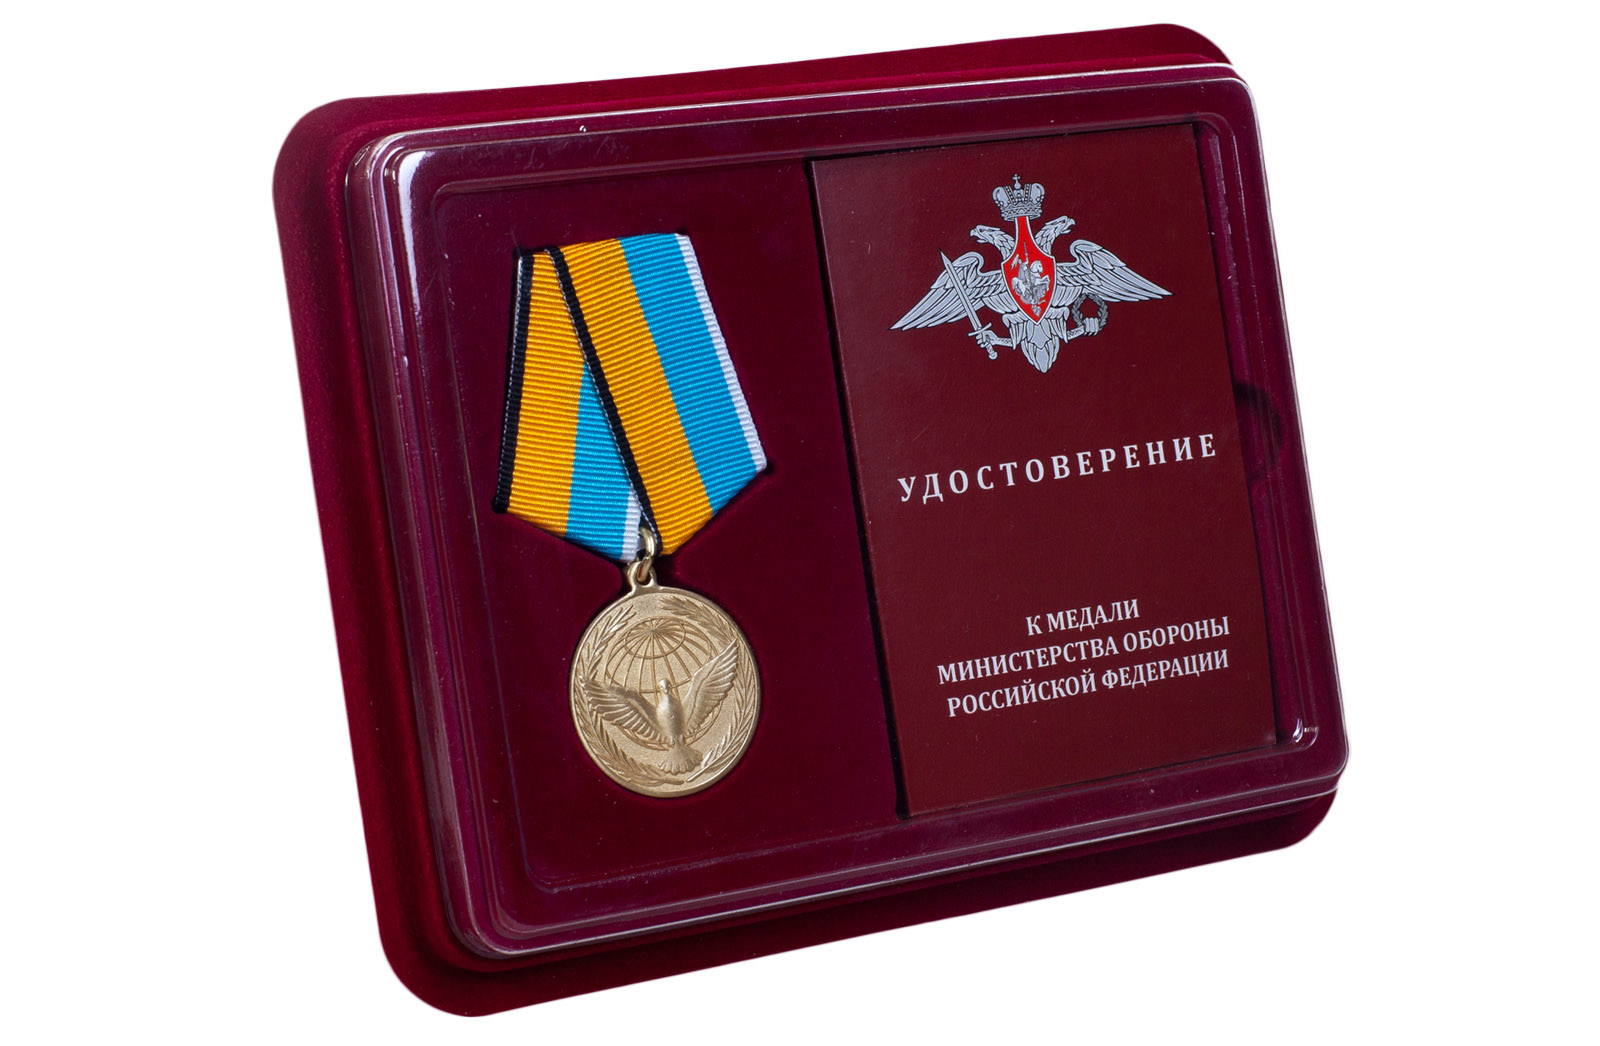 Файл:Памятная медаль «Участнику специальной военной операции».png — Википедия